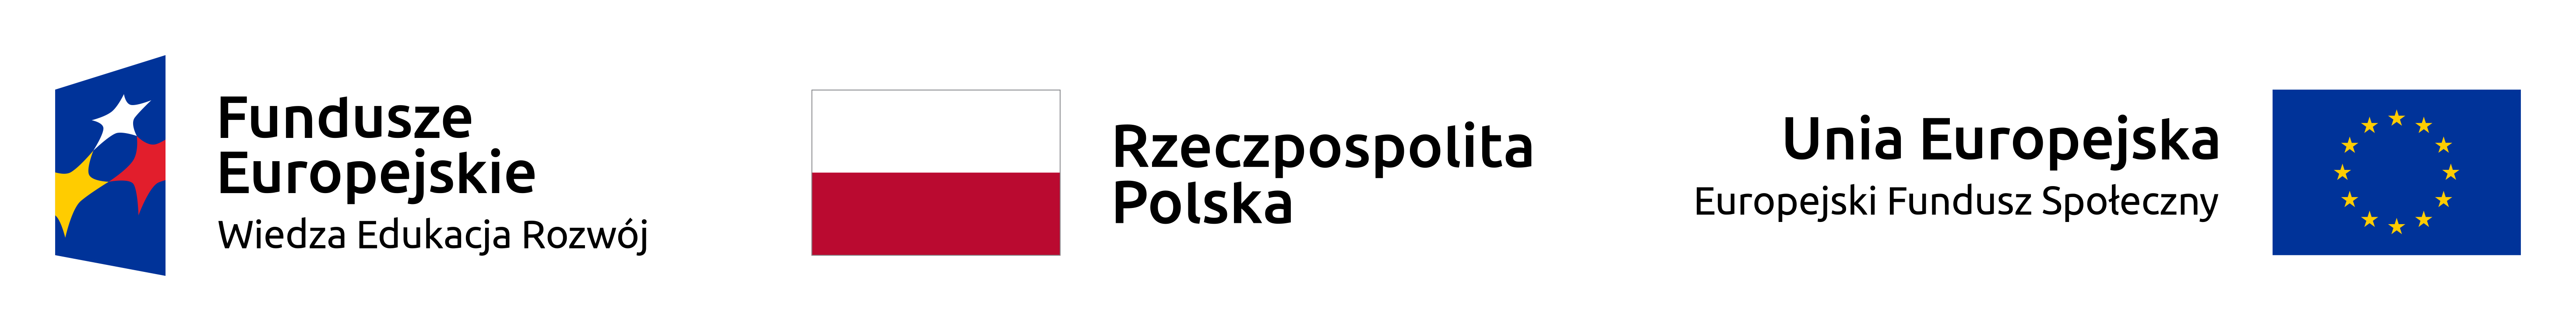 logo Fundusze Europejskie Wiedza Edukacja Rozwój Rzeczpospolita Polska Unia Europejska Europejski Fundusz Społeczny